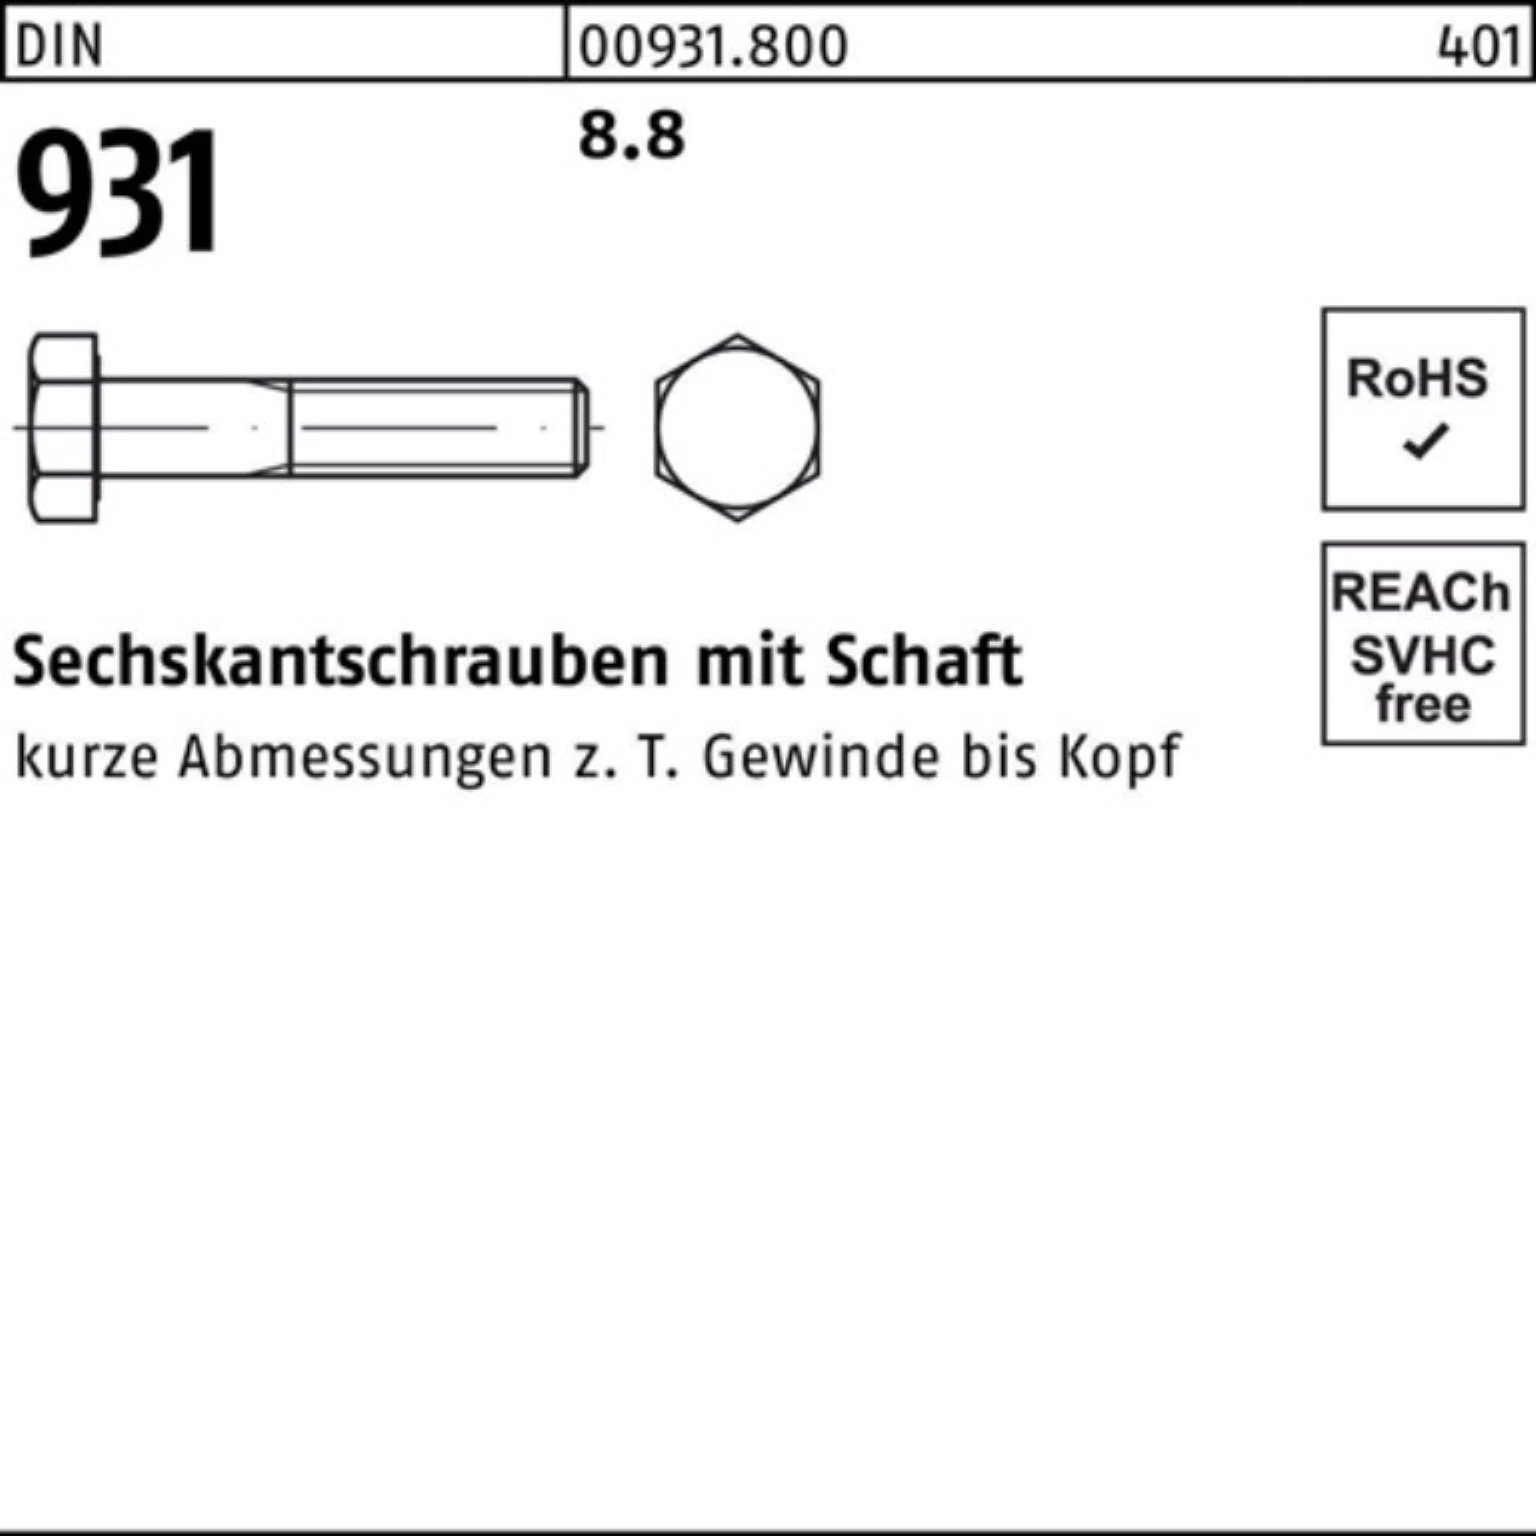 Reyher Sechskantschraube 200er Sechskantschraube 8.8 35 931 DIN 200 Stück Pack DIN Schaft M6x